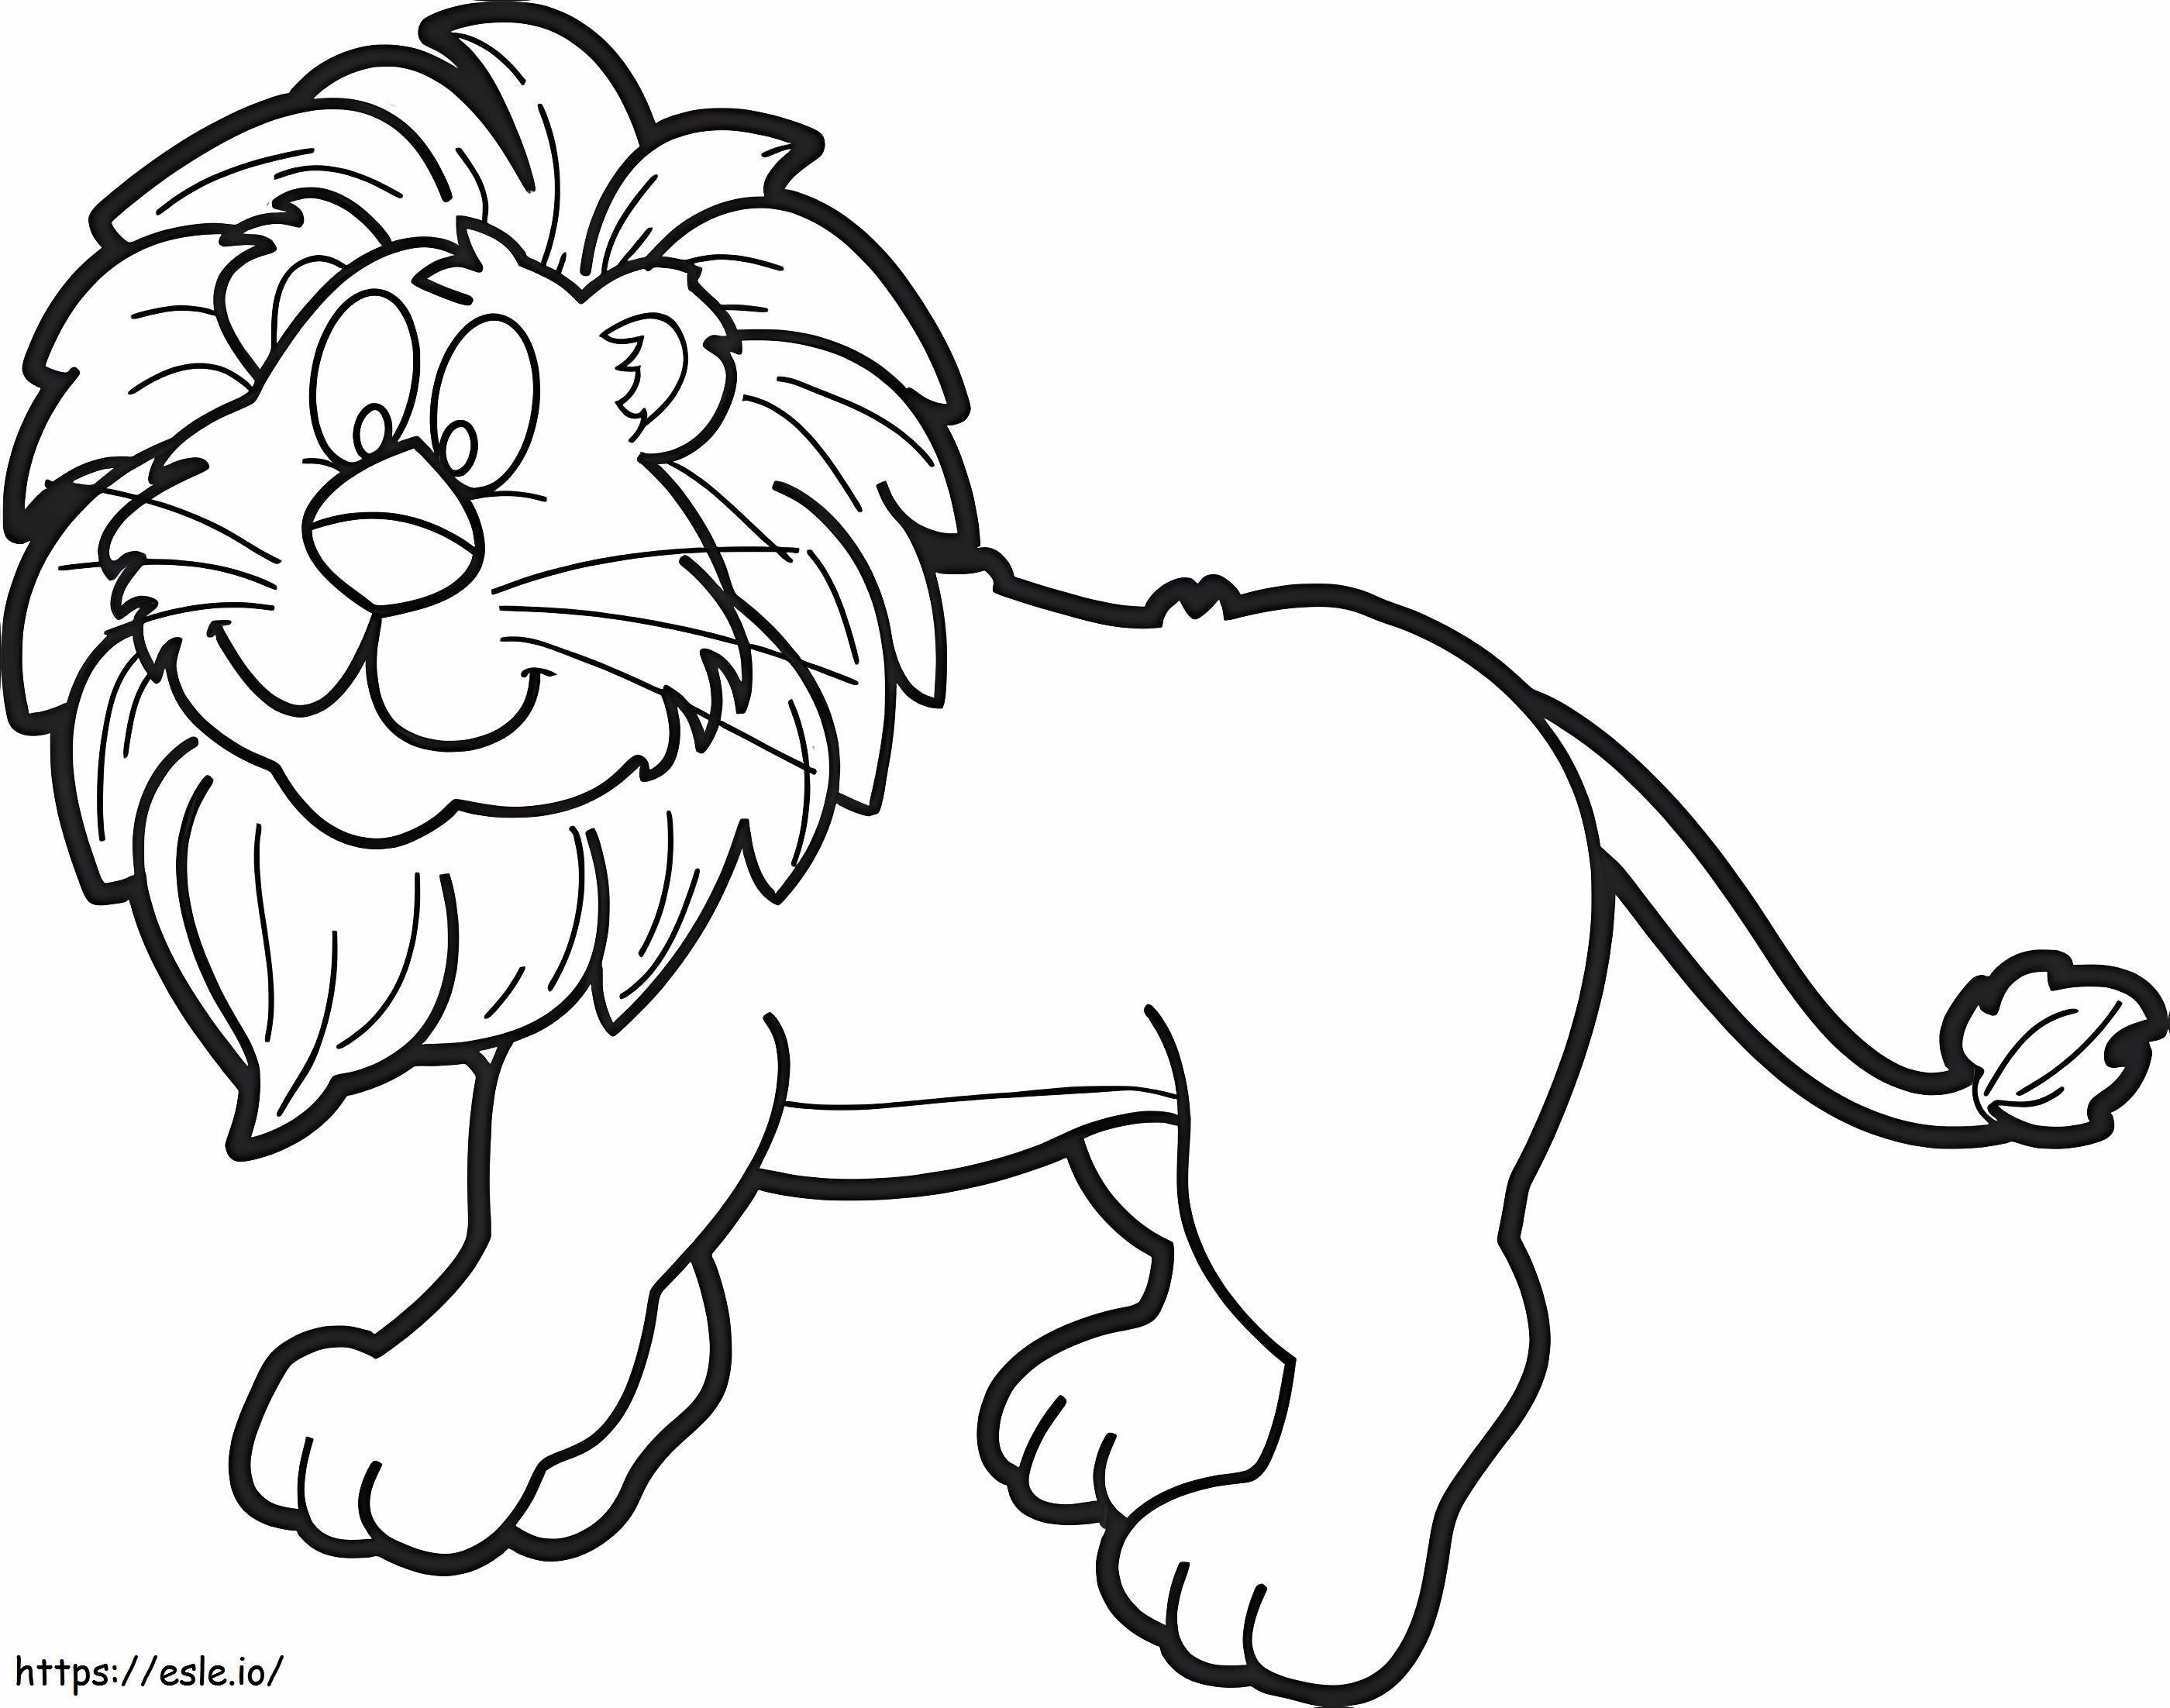 Leão dos desenhos animados para colorir